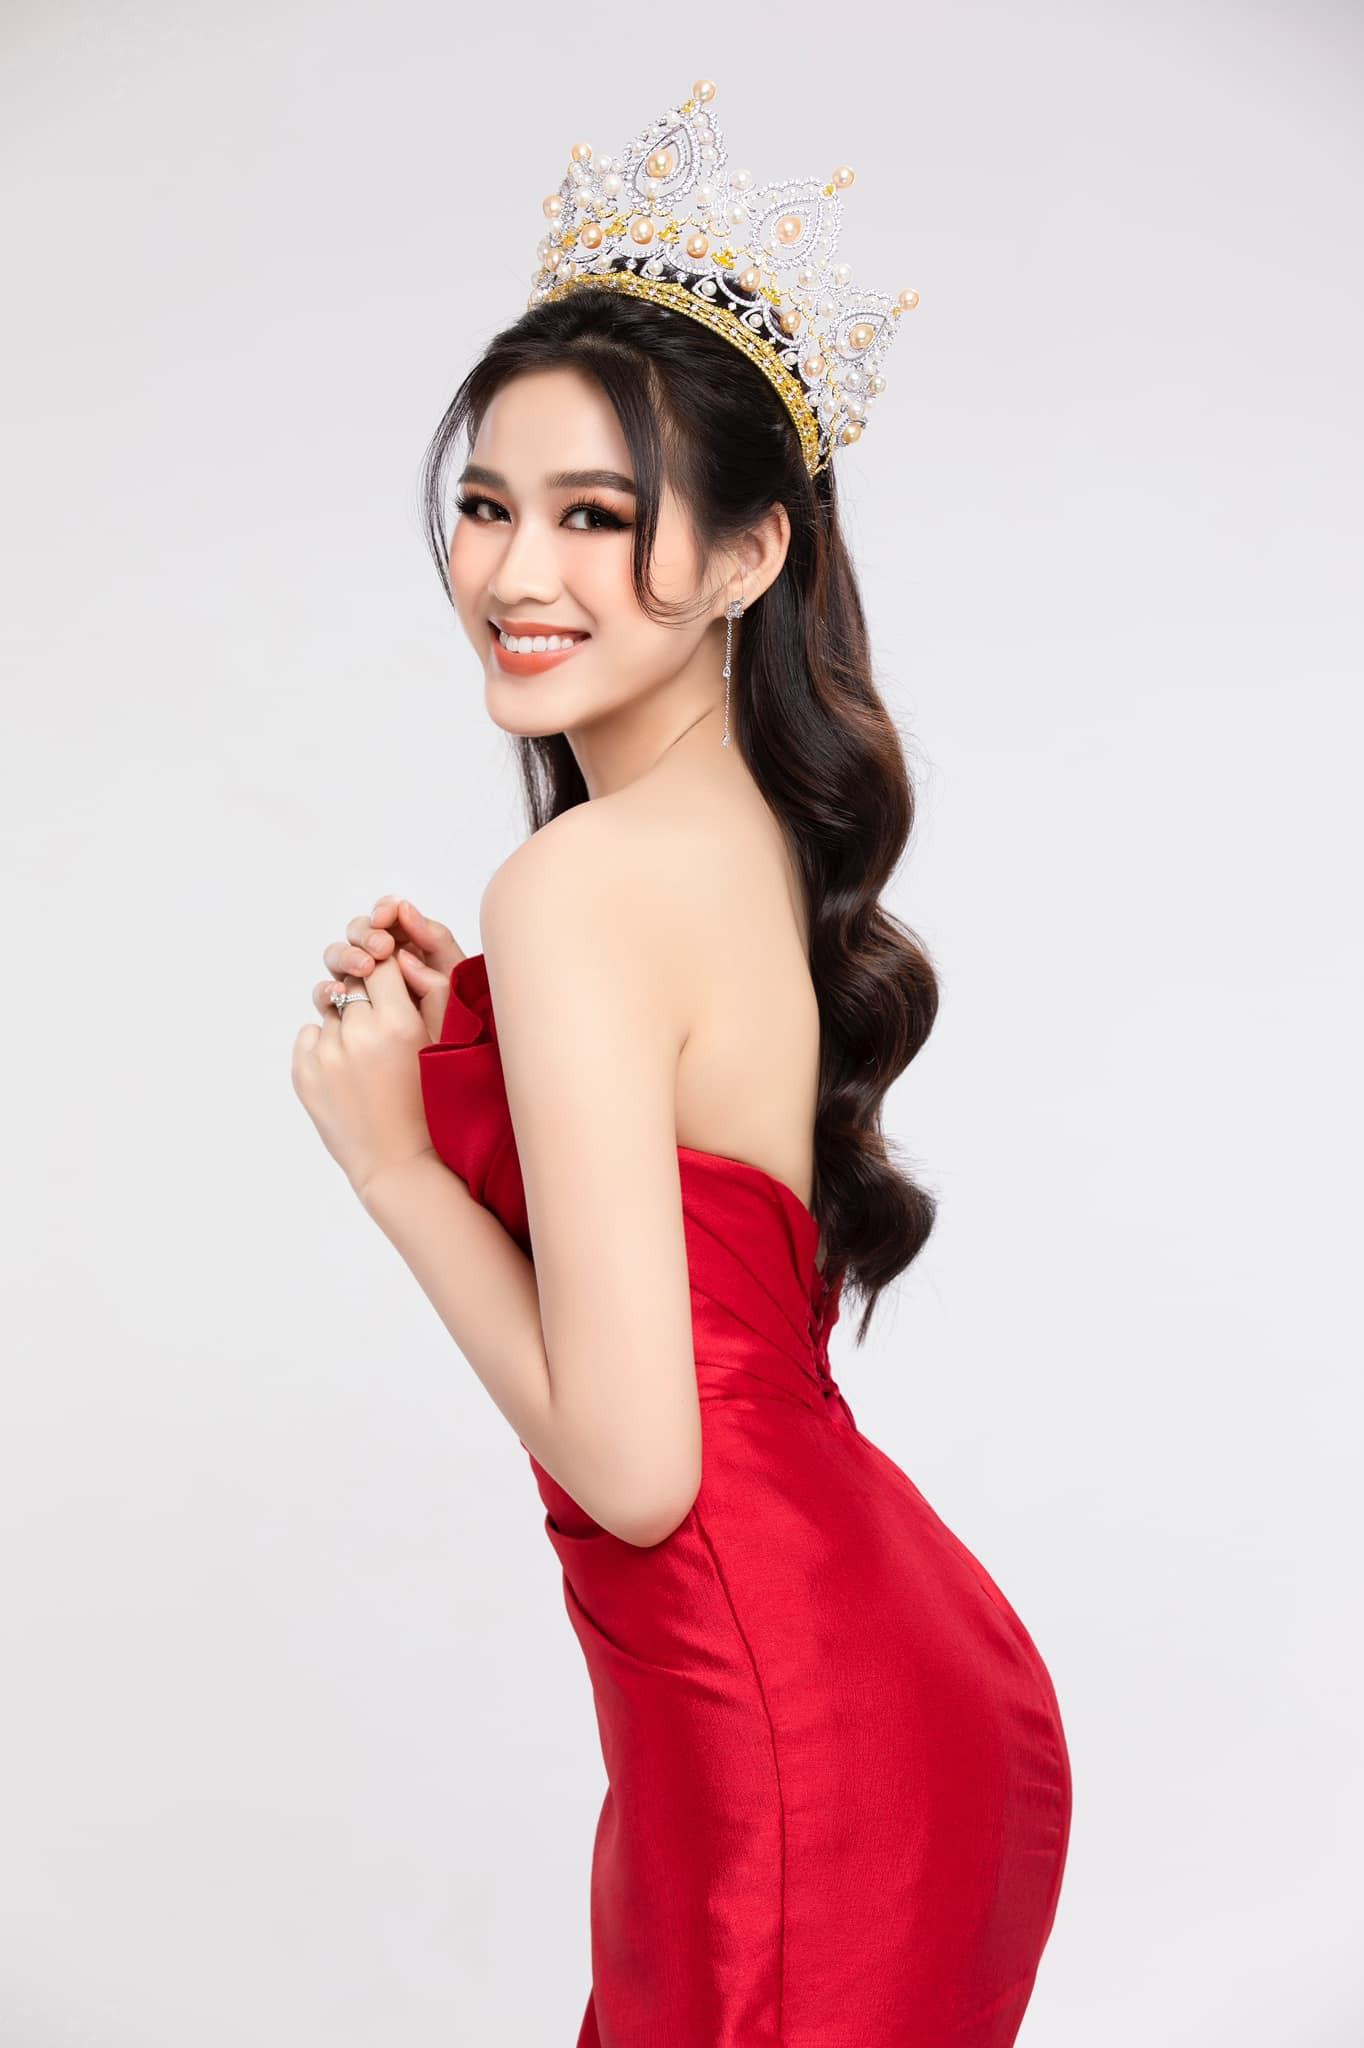 Đại diện Việt Nam tham gia Miss World năm nay là Hoa hậu Đỗ Thị Hà.